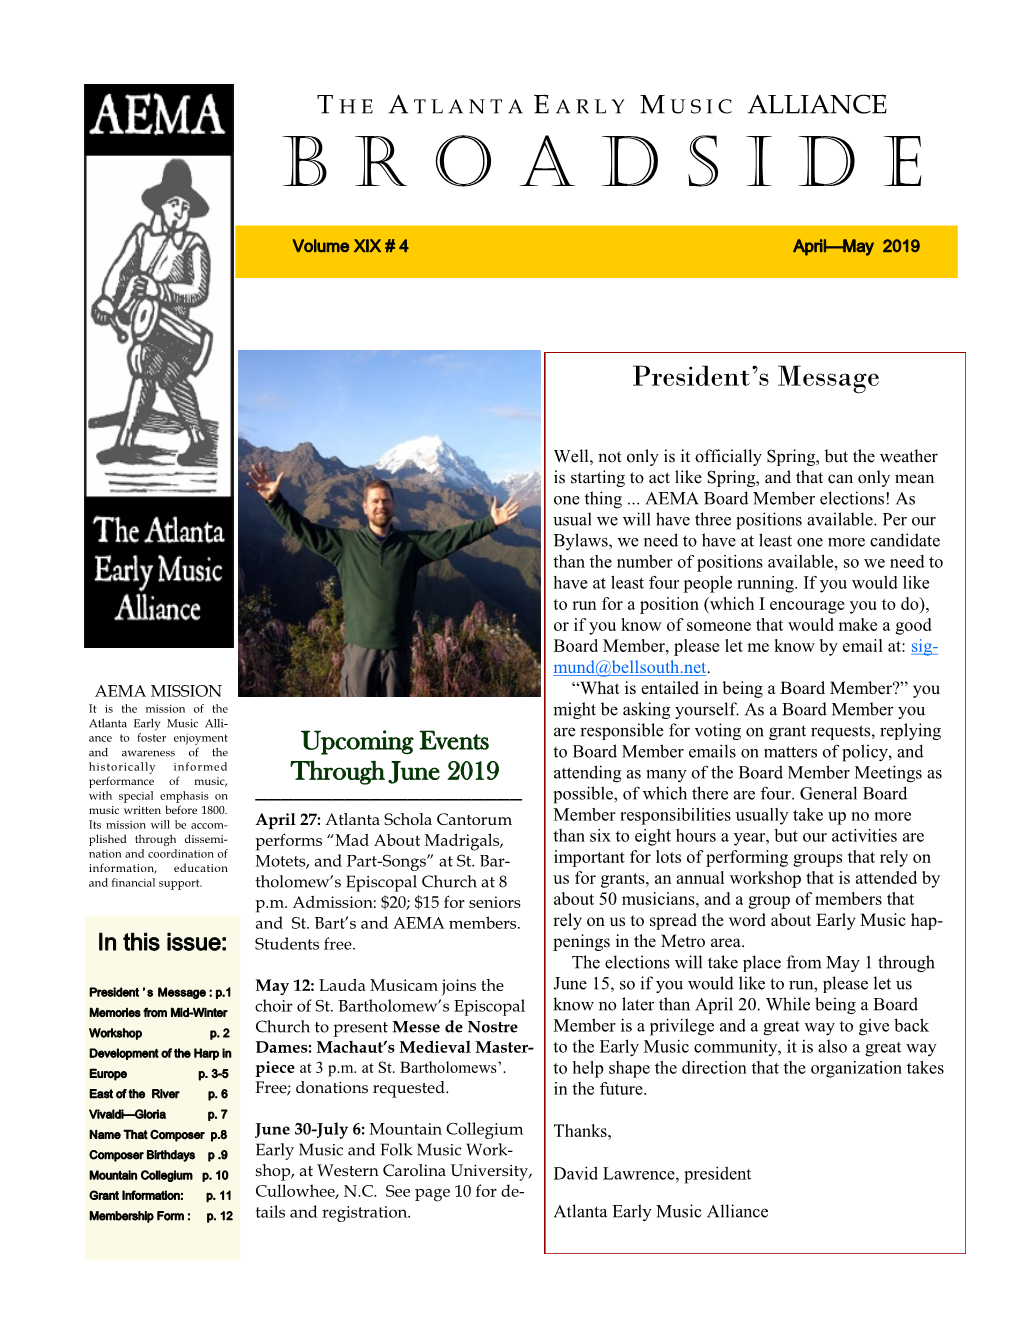 April-June 2019 Broadside